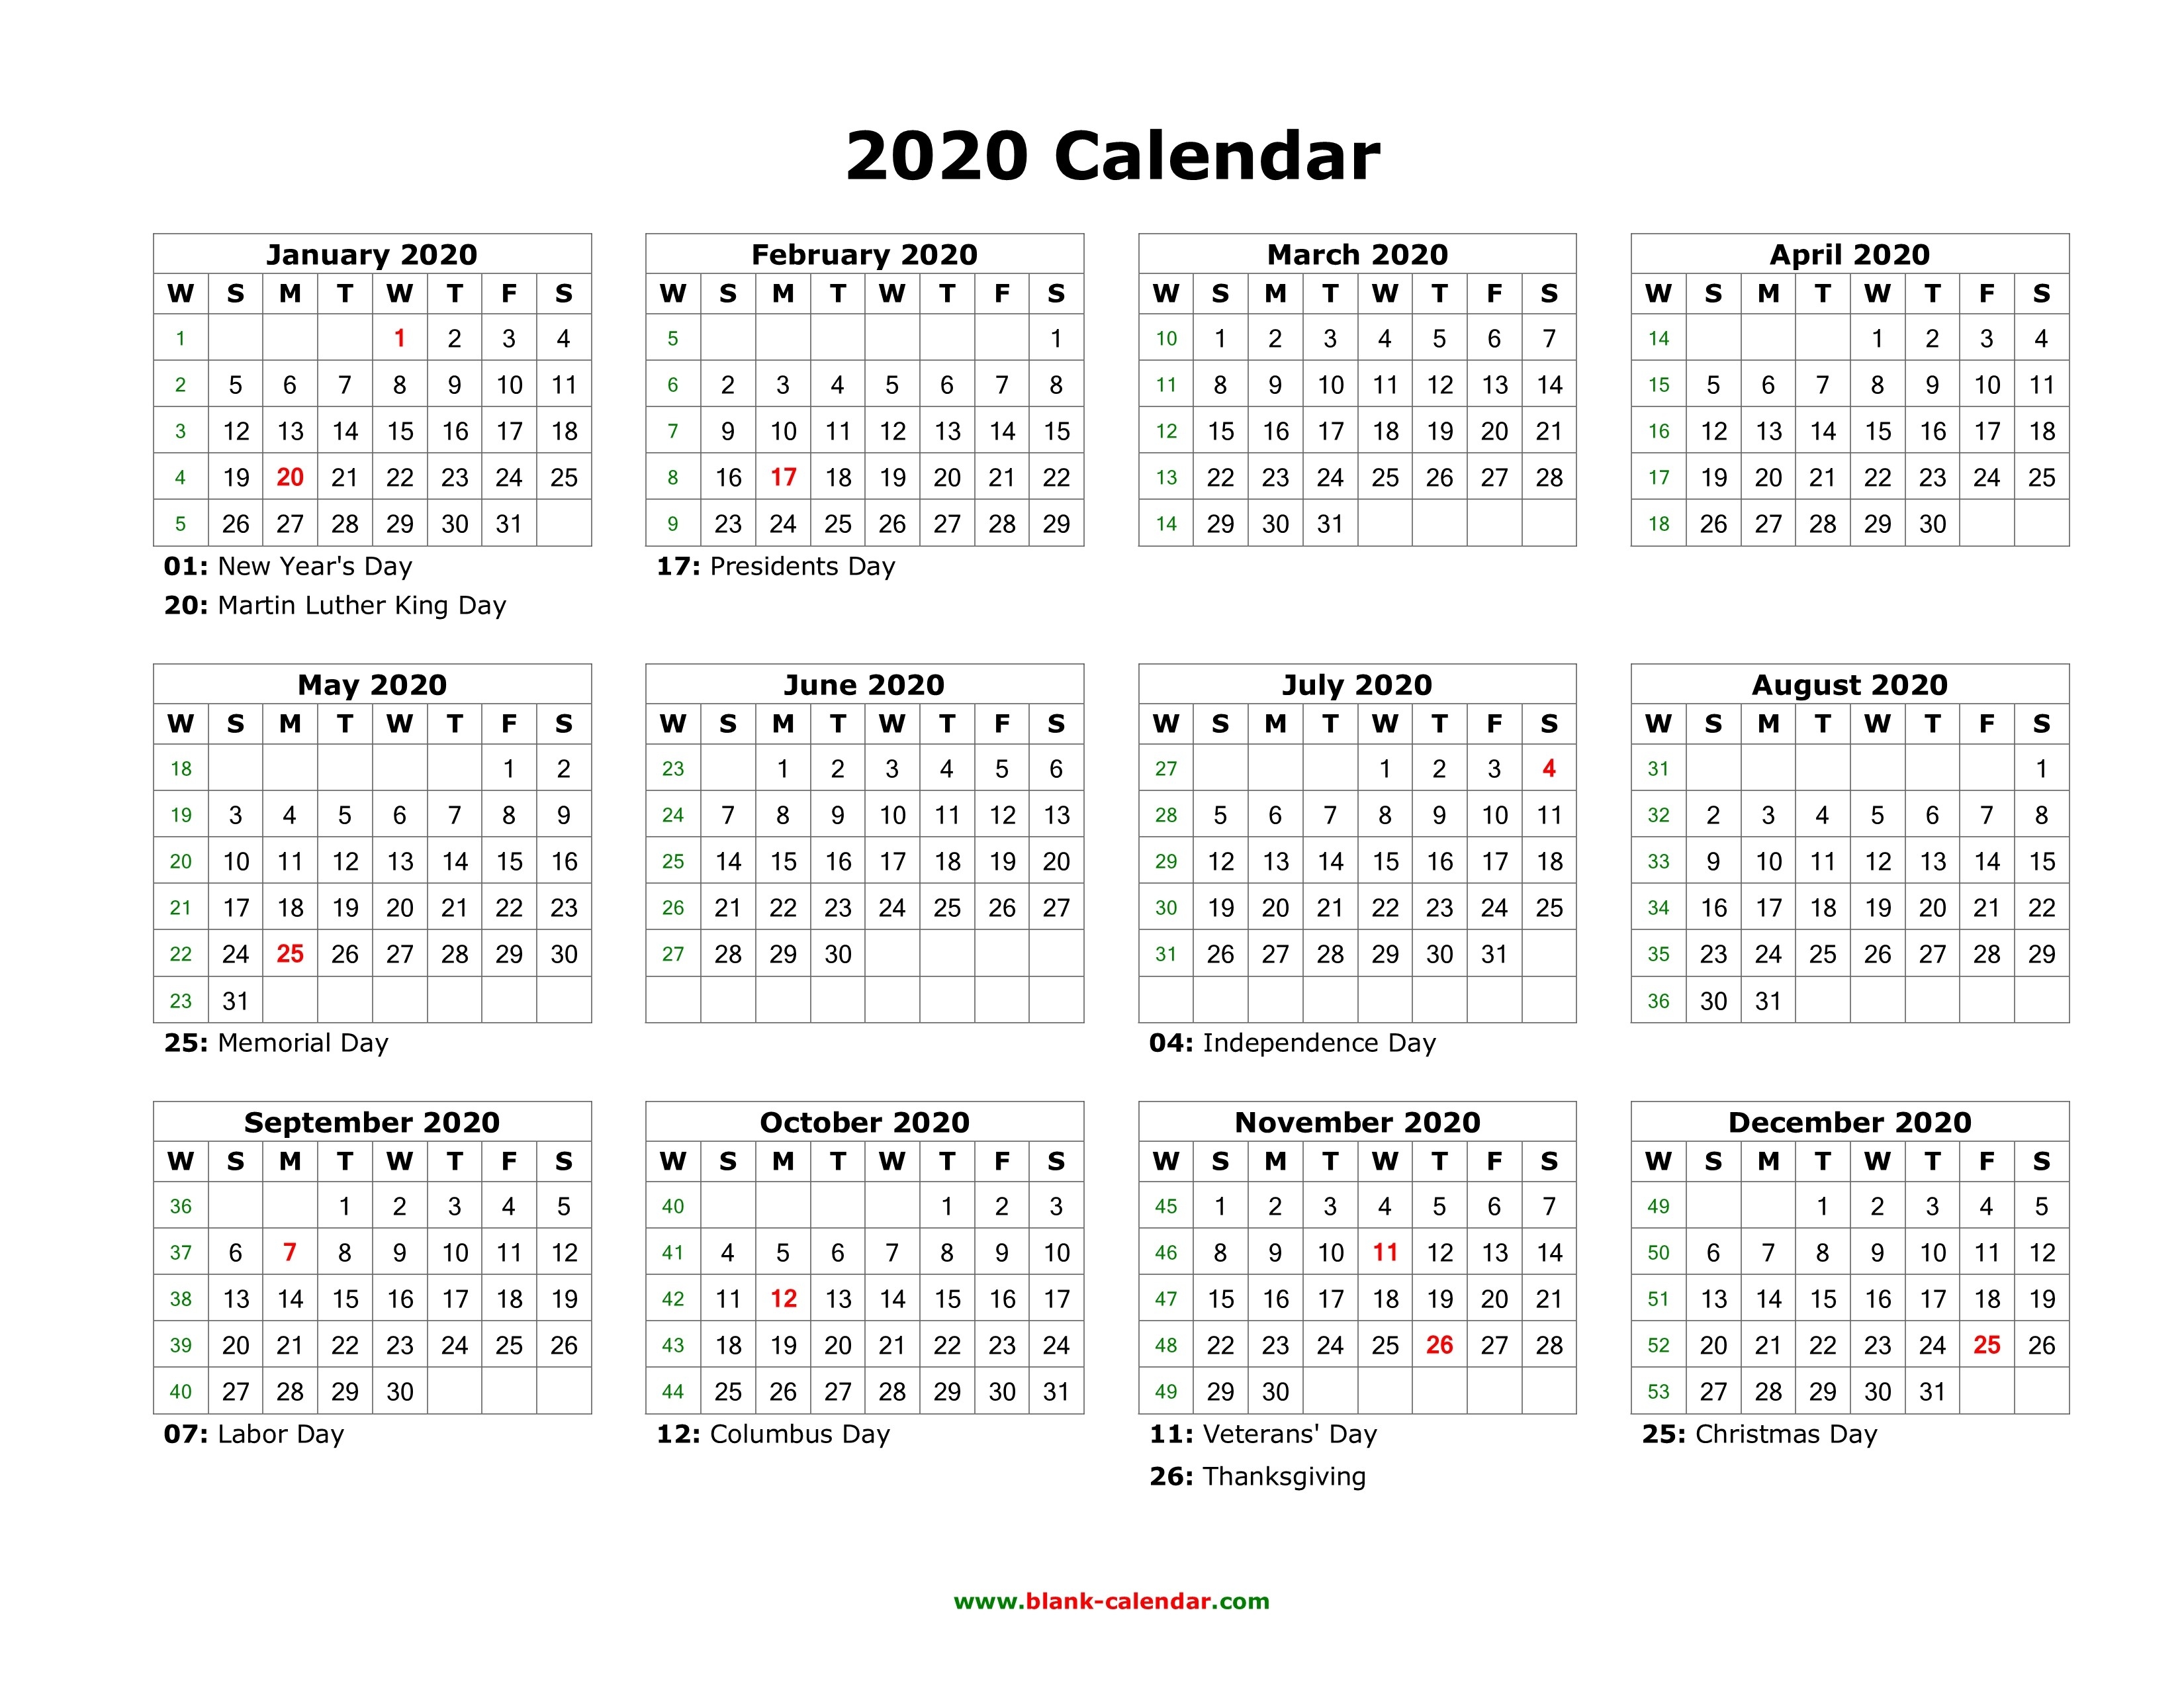 Blank Calendar 2020 | Free Download Calendar Templates-2020 Word Calendar Template